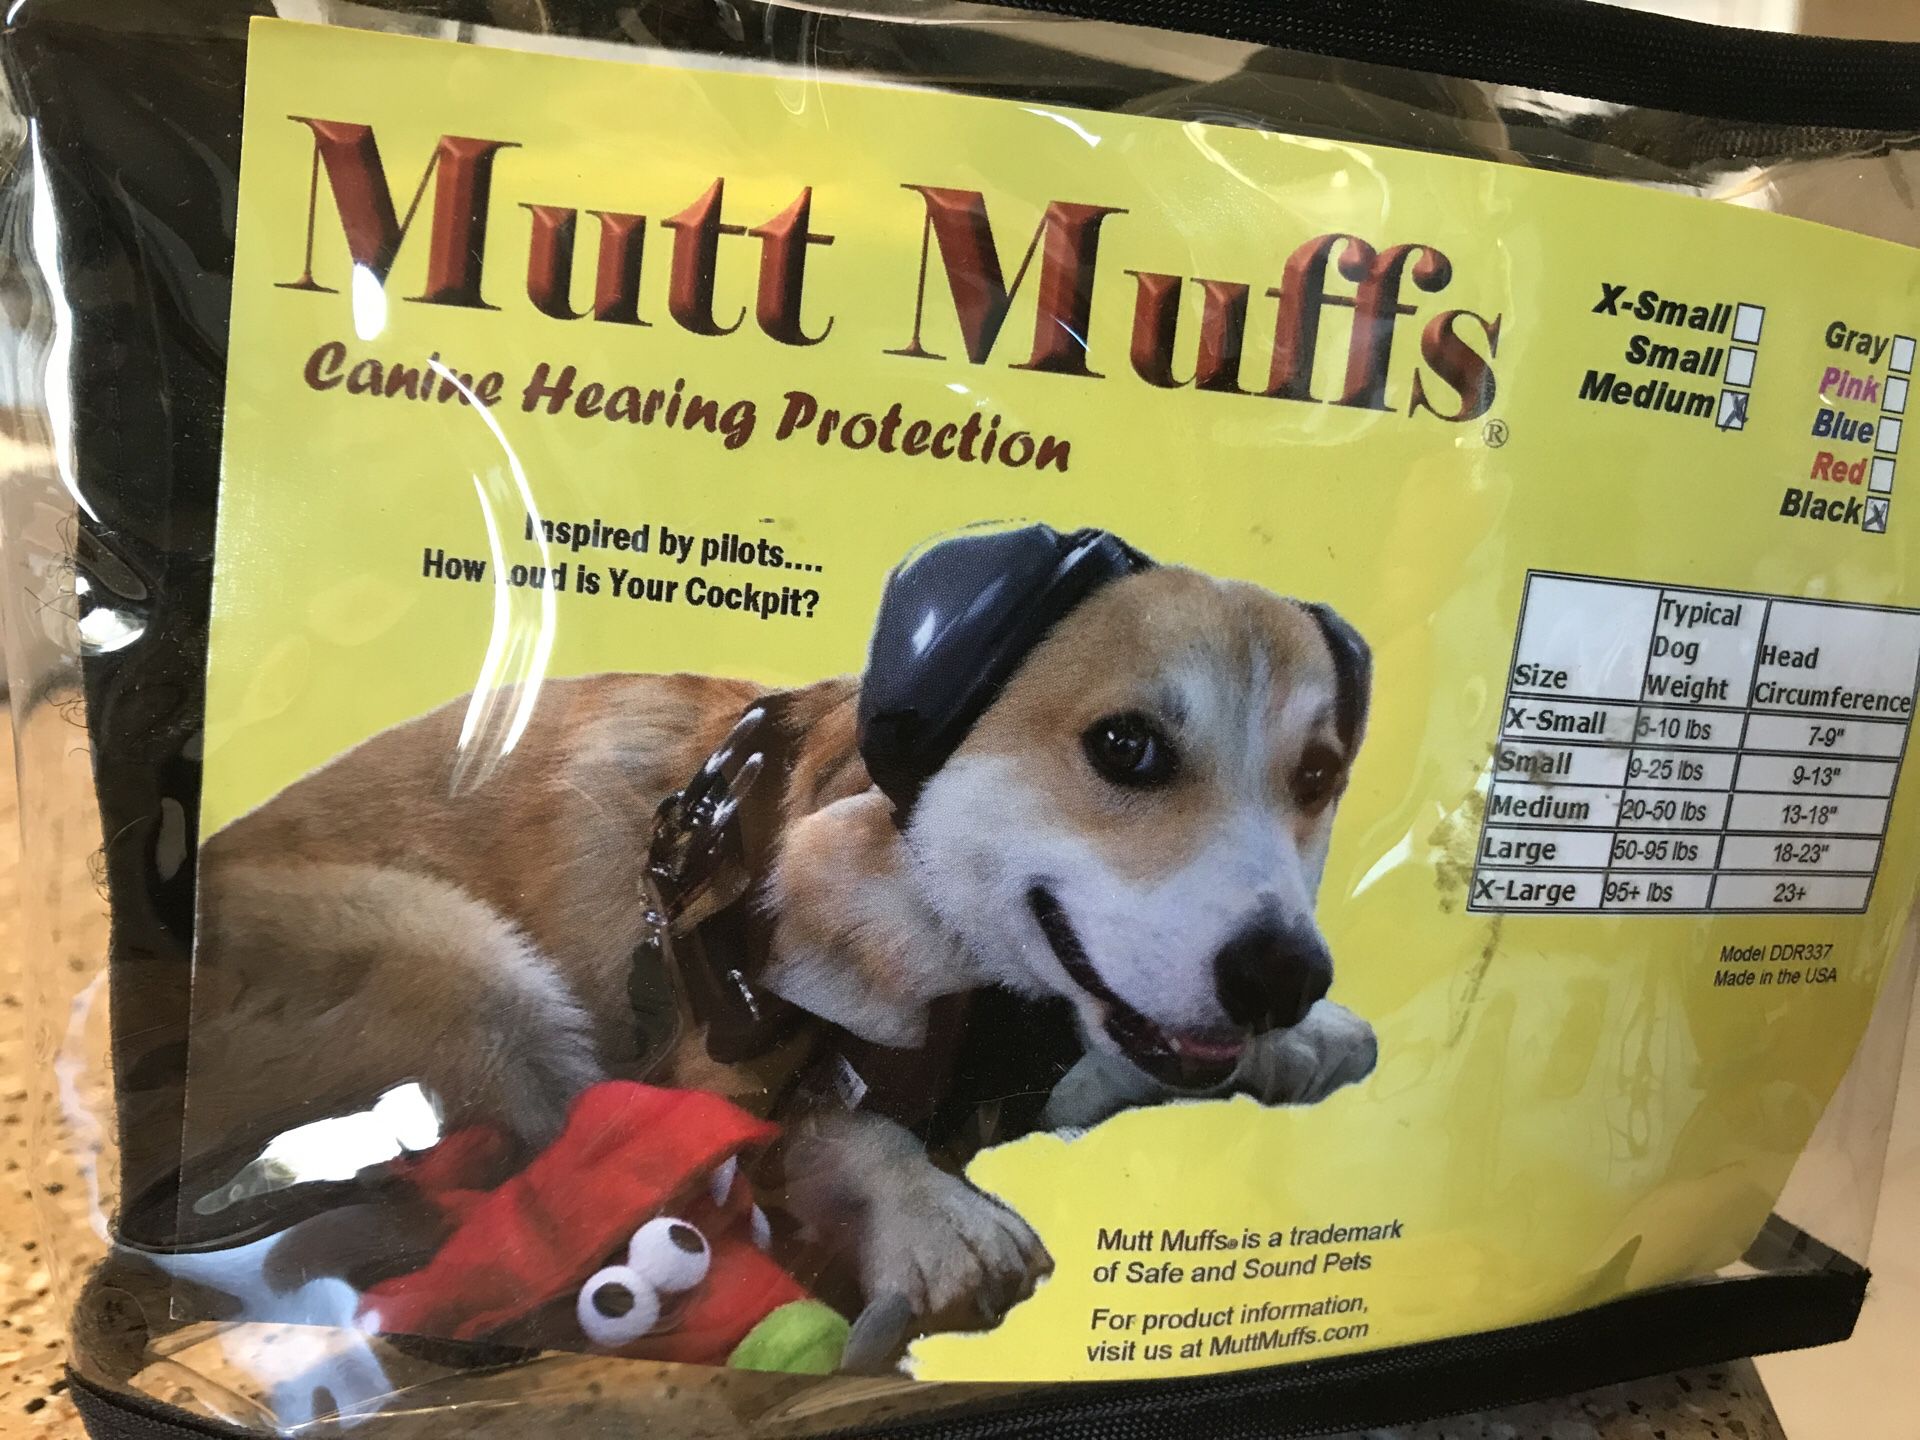 Mutt muffs